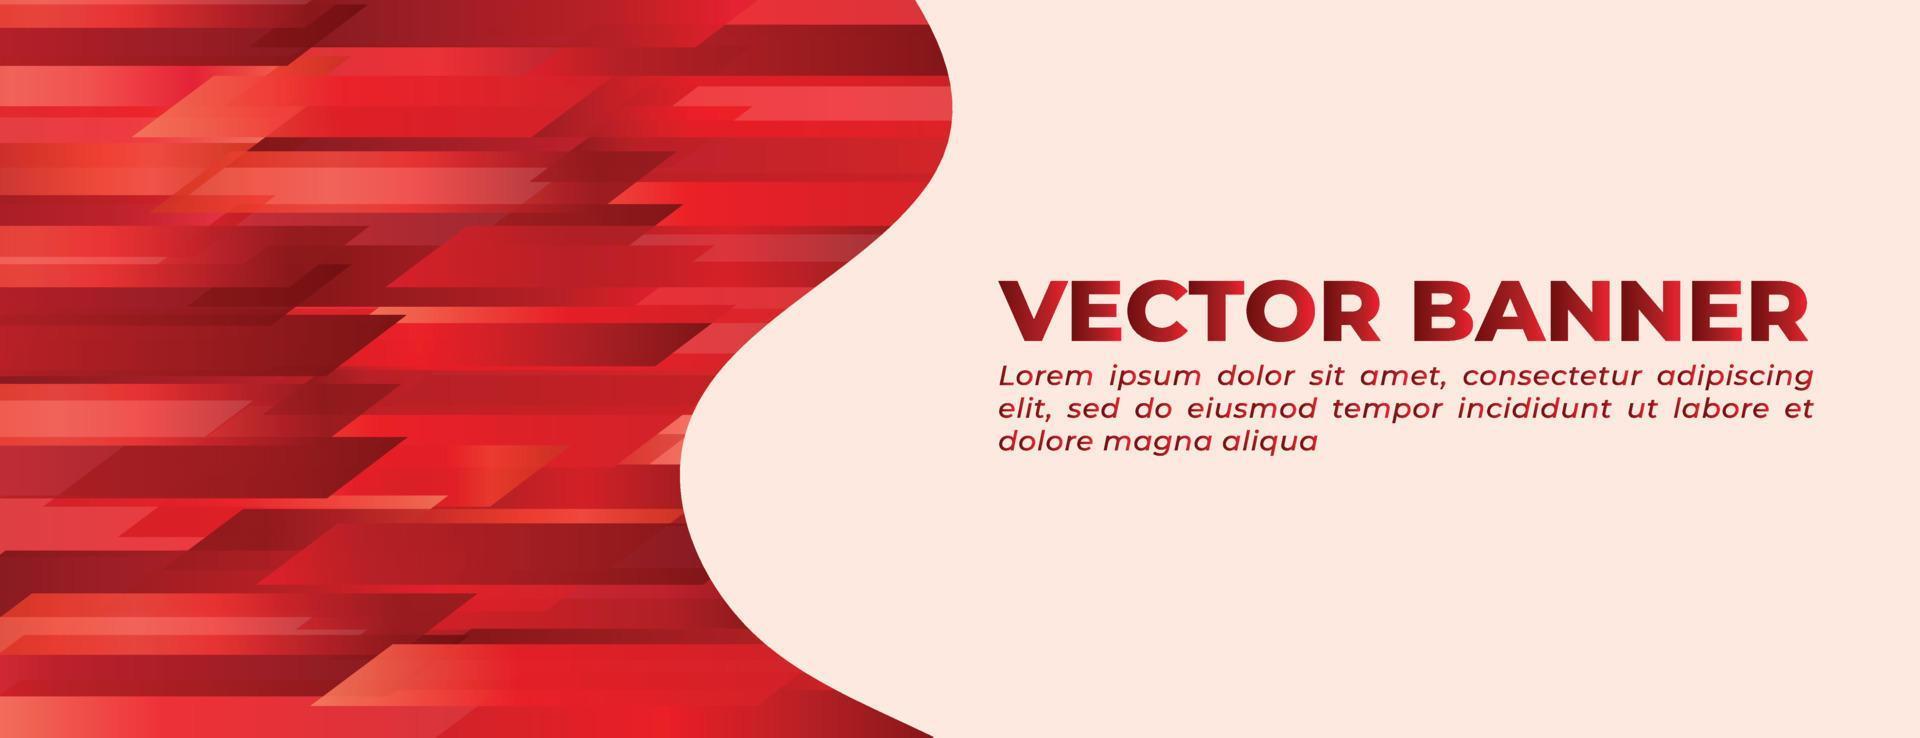 banner de onda vermelha com design de modelo de forma diagonal abstrata vetor